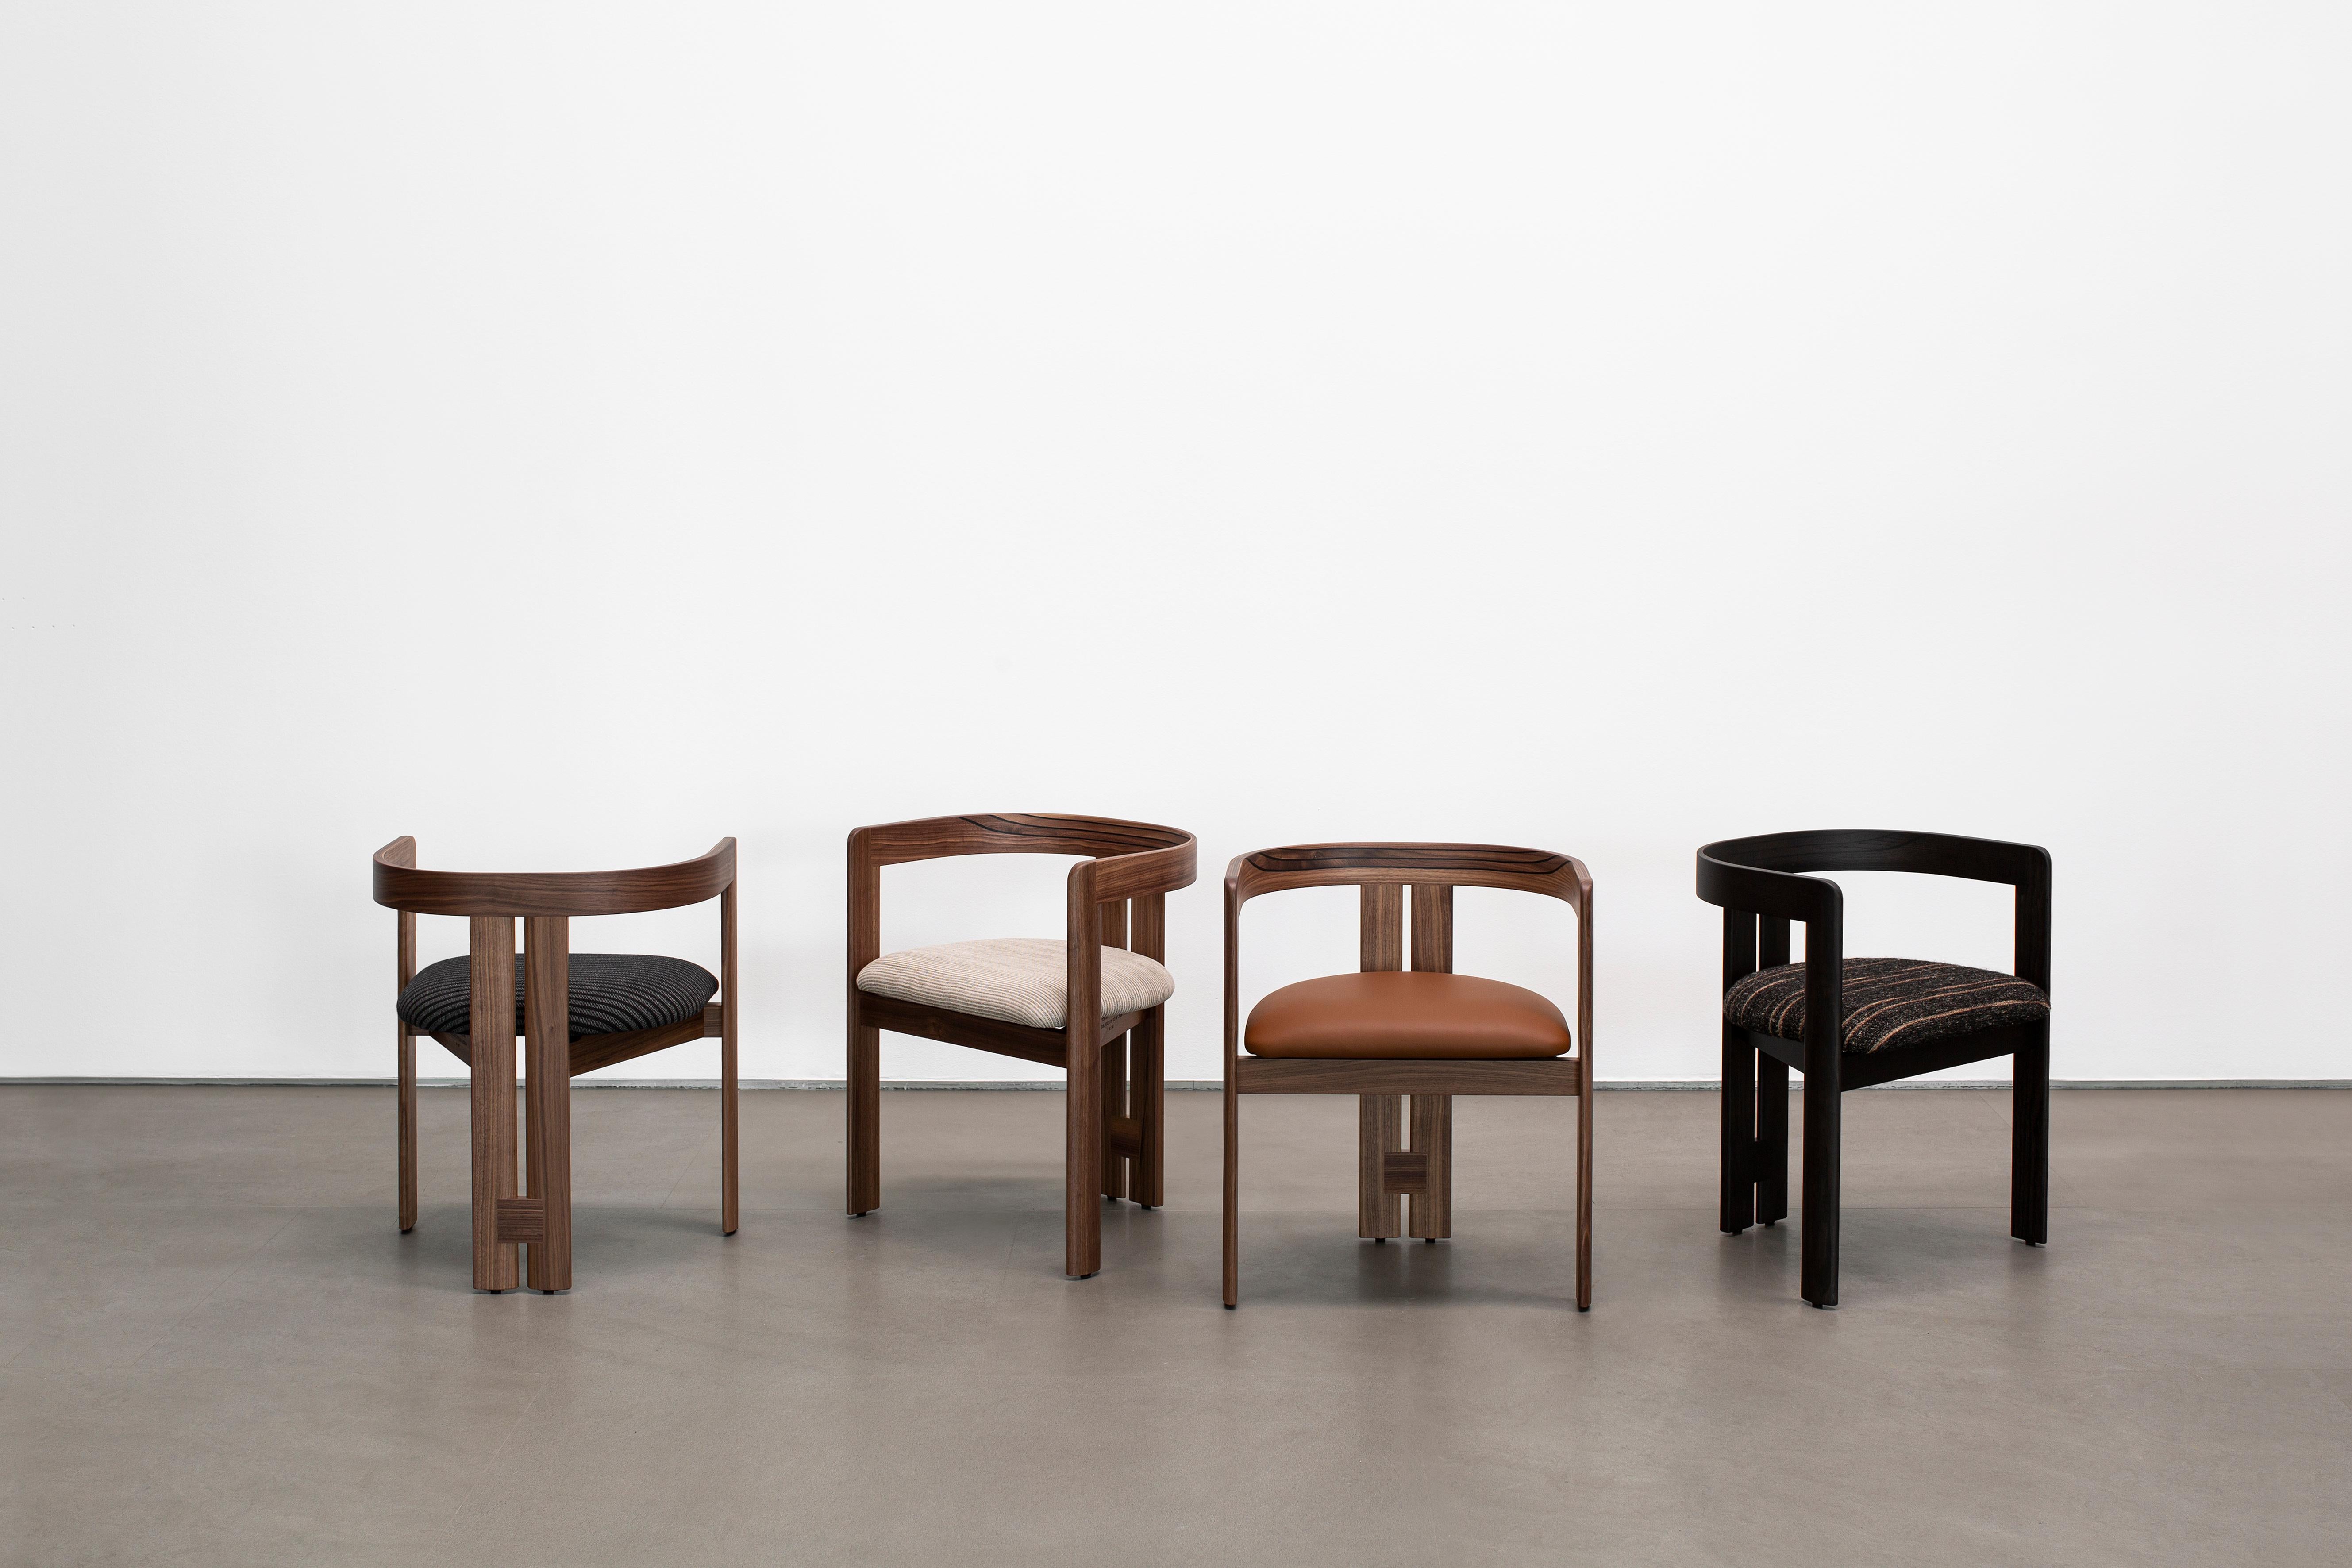 La chaise Pigreco est le premier produit conçu par Tobia Scarpa, imaginé en 1959 comme projet de fin d'études d'architecture à l'université de Venise. La chaise est le résultat des premières intuitions de jeunesse du designer. Il voulait créer un